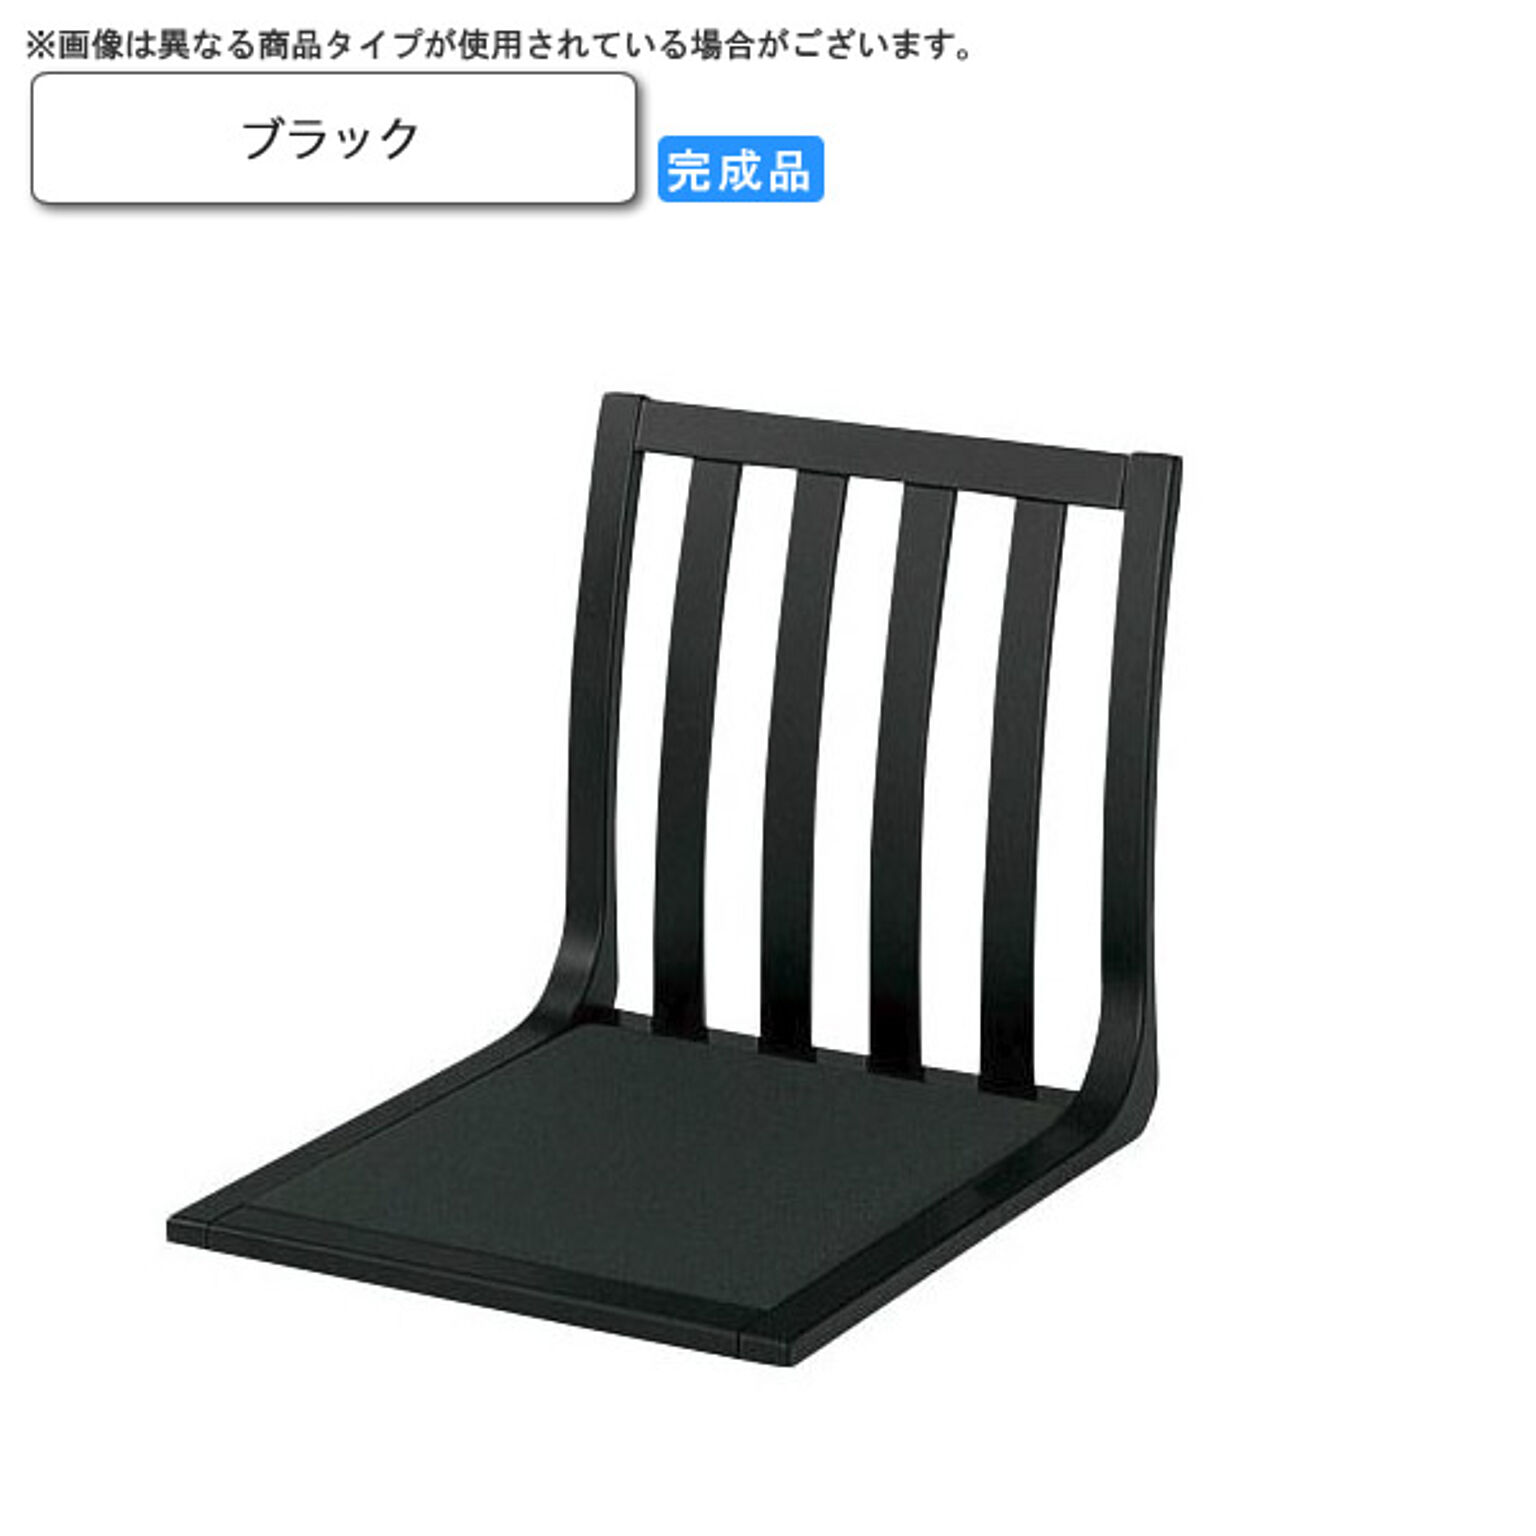 座椅子 ブラック 座椅子 業務用家具：wood japaneseシリーズ★ ケーフ ブラック(black) (和風)